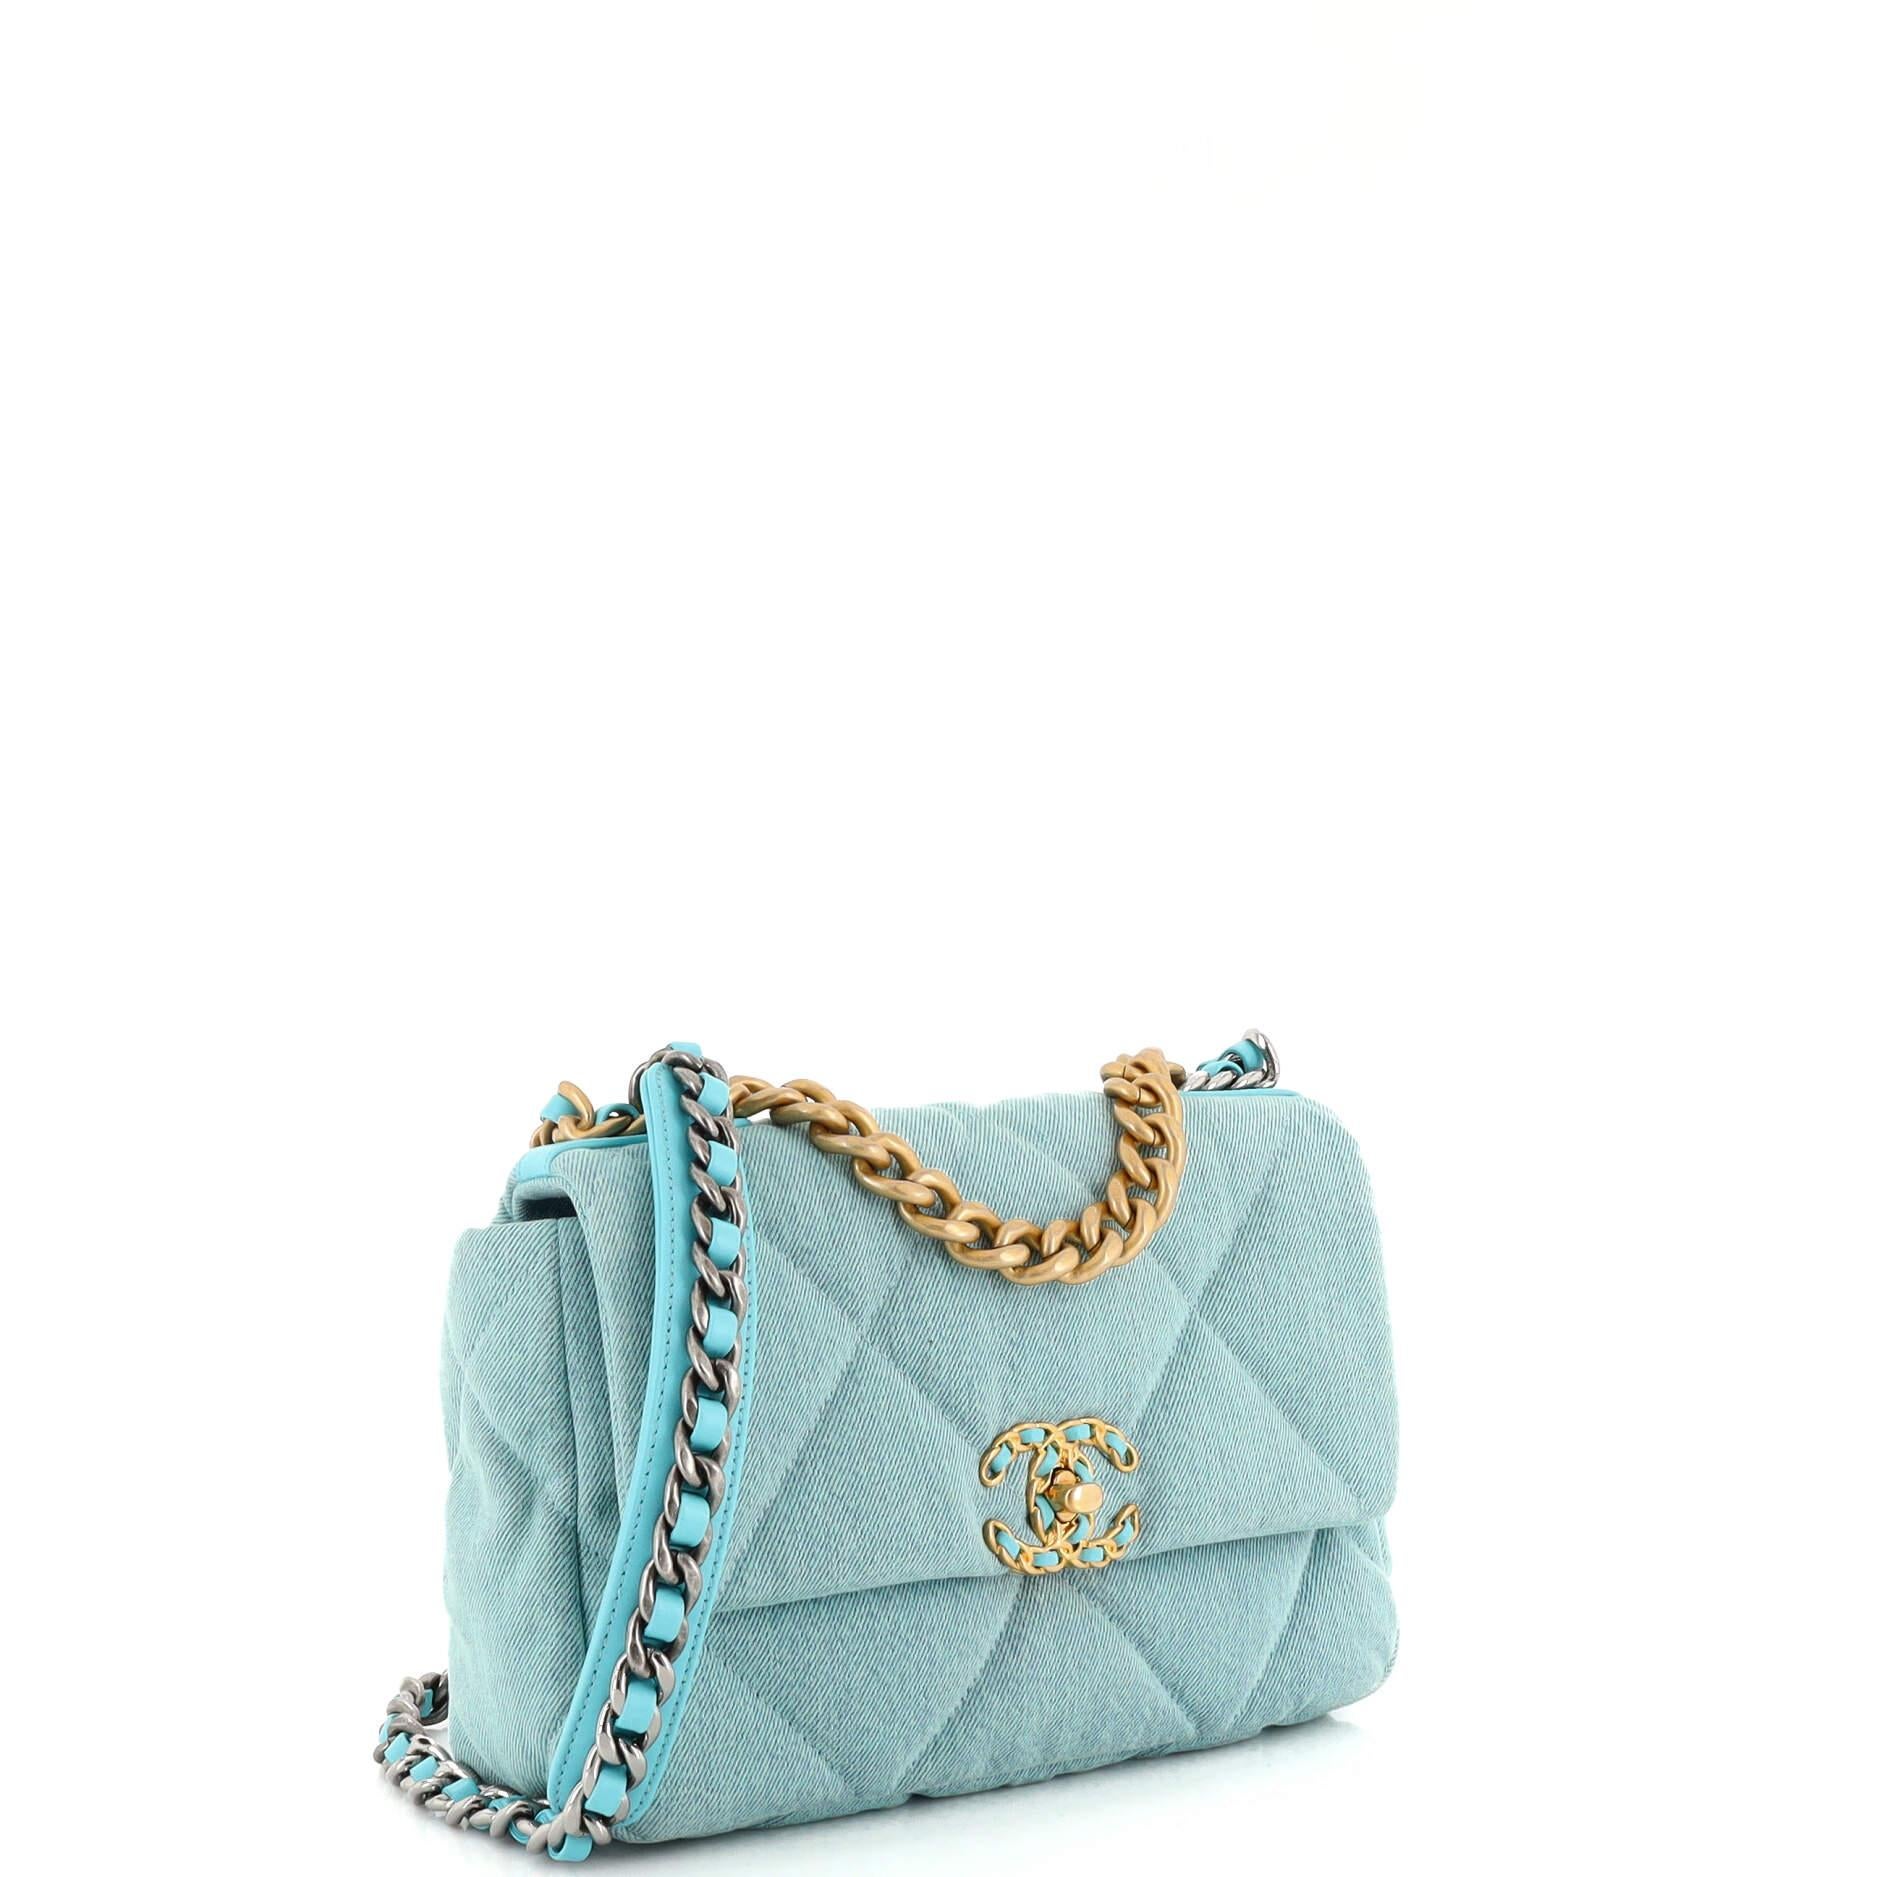 Chanel 19 Denim Bag - 14 For Sale on 1stDibs